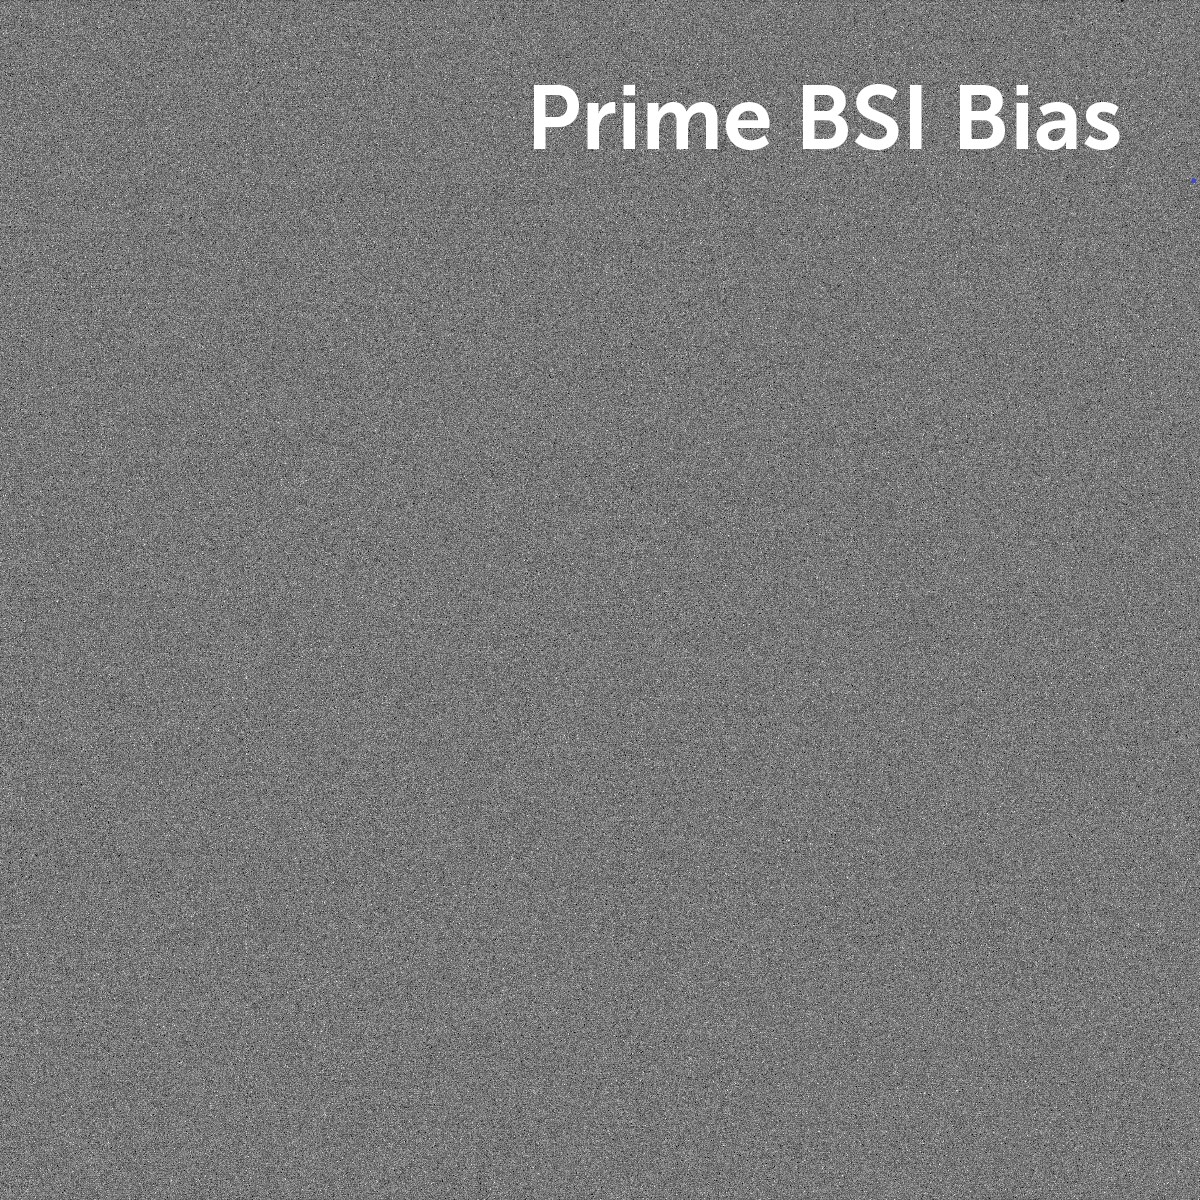 Prime-BSI-bias